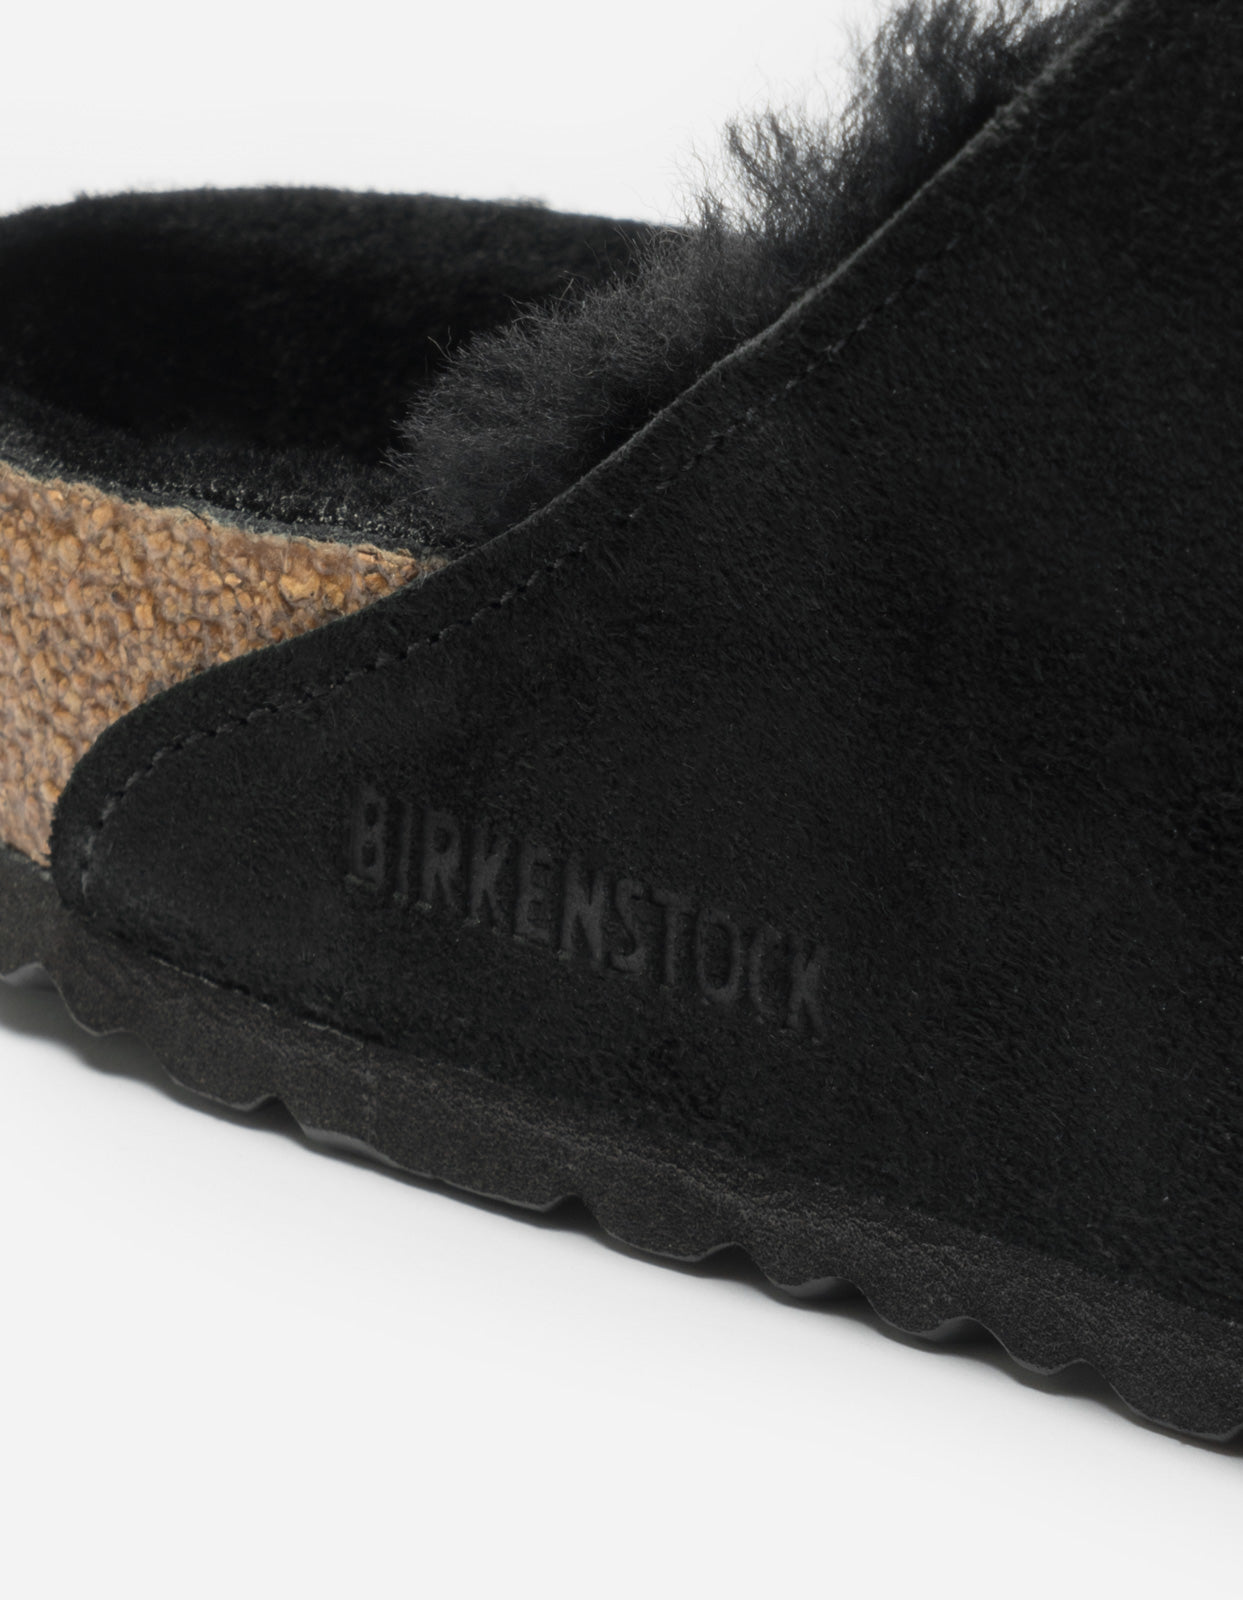 Birkenstock Arizona VL Shearling Black